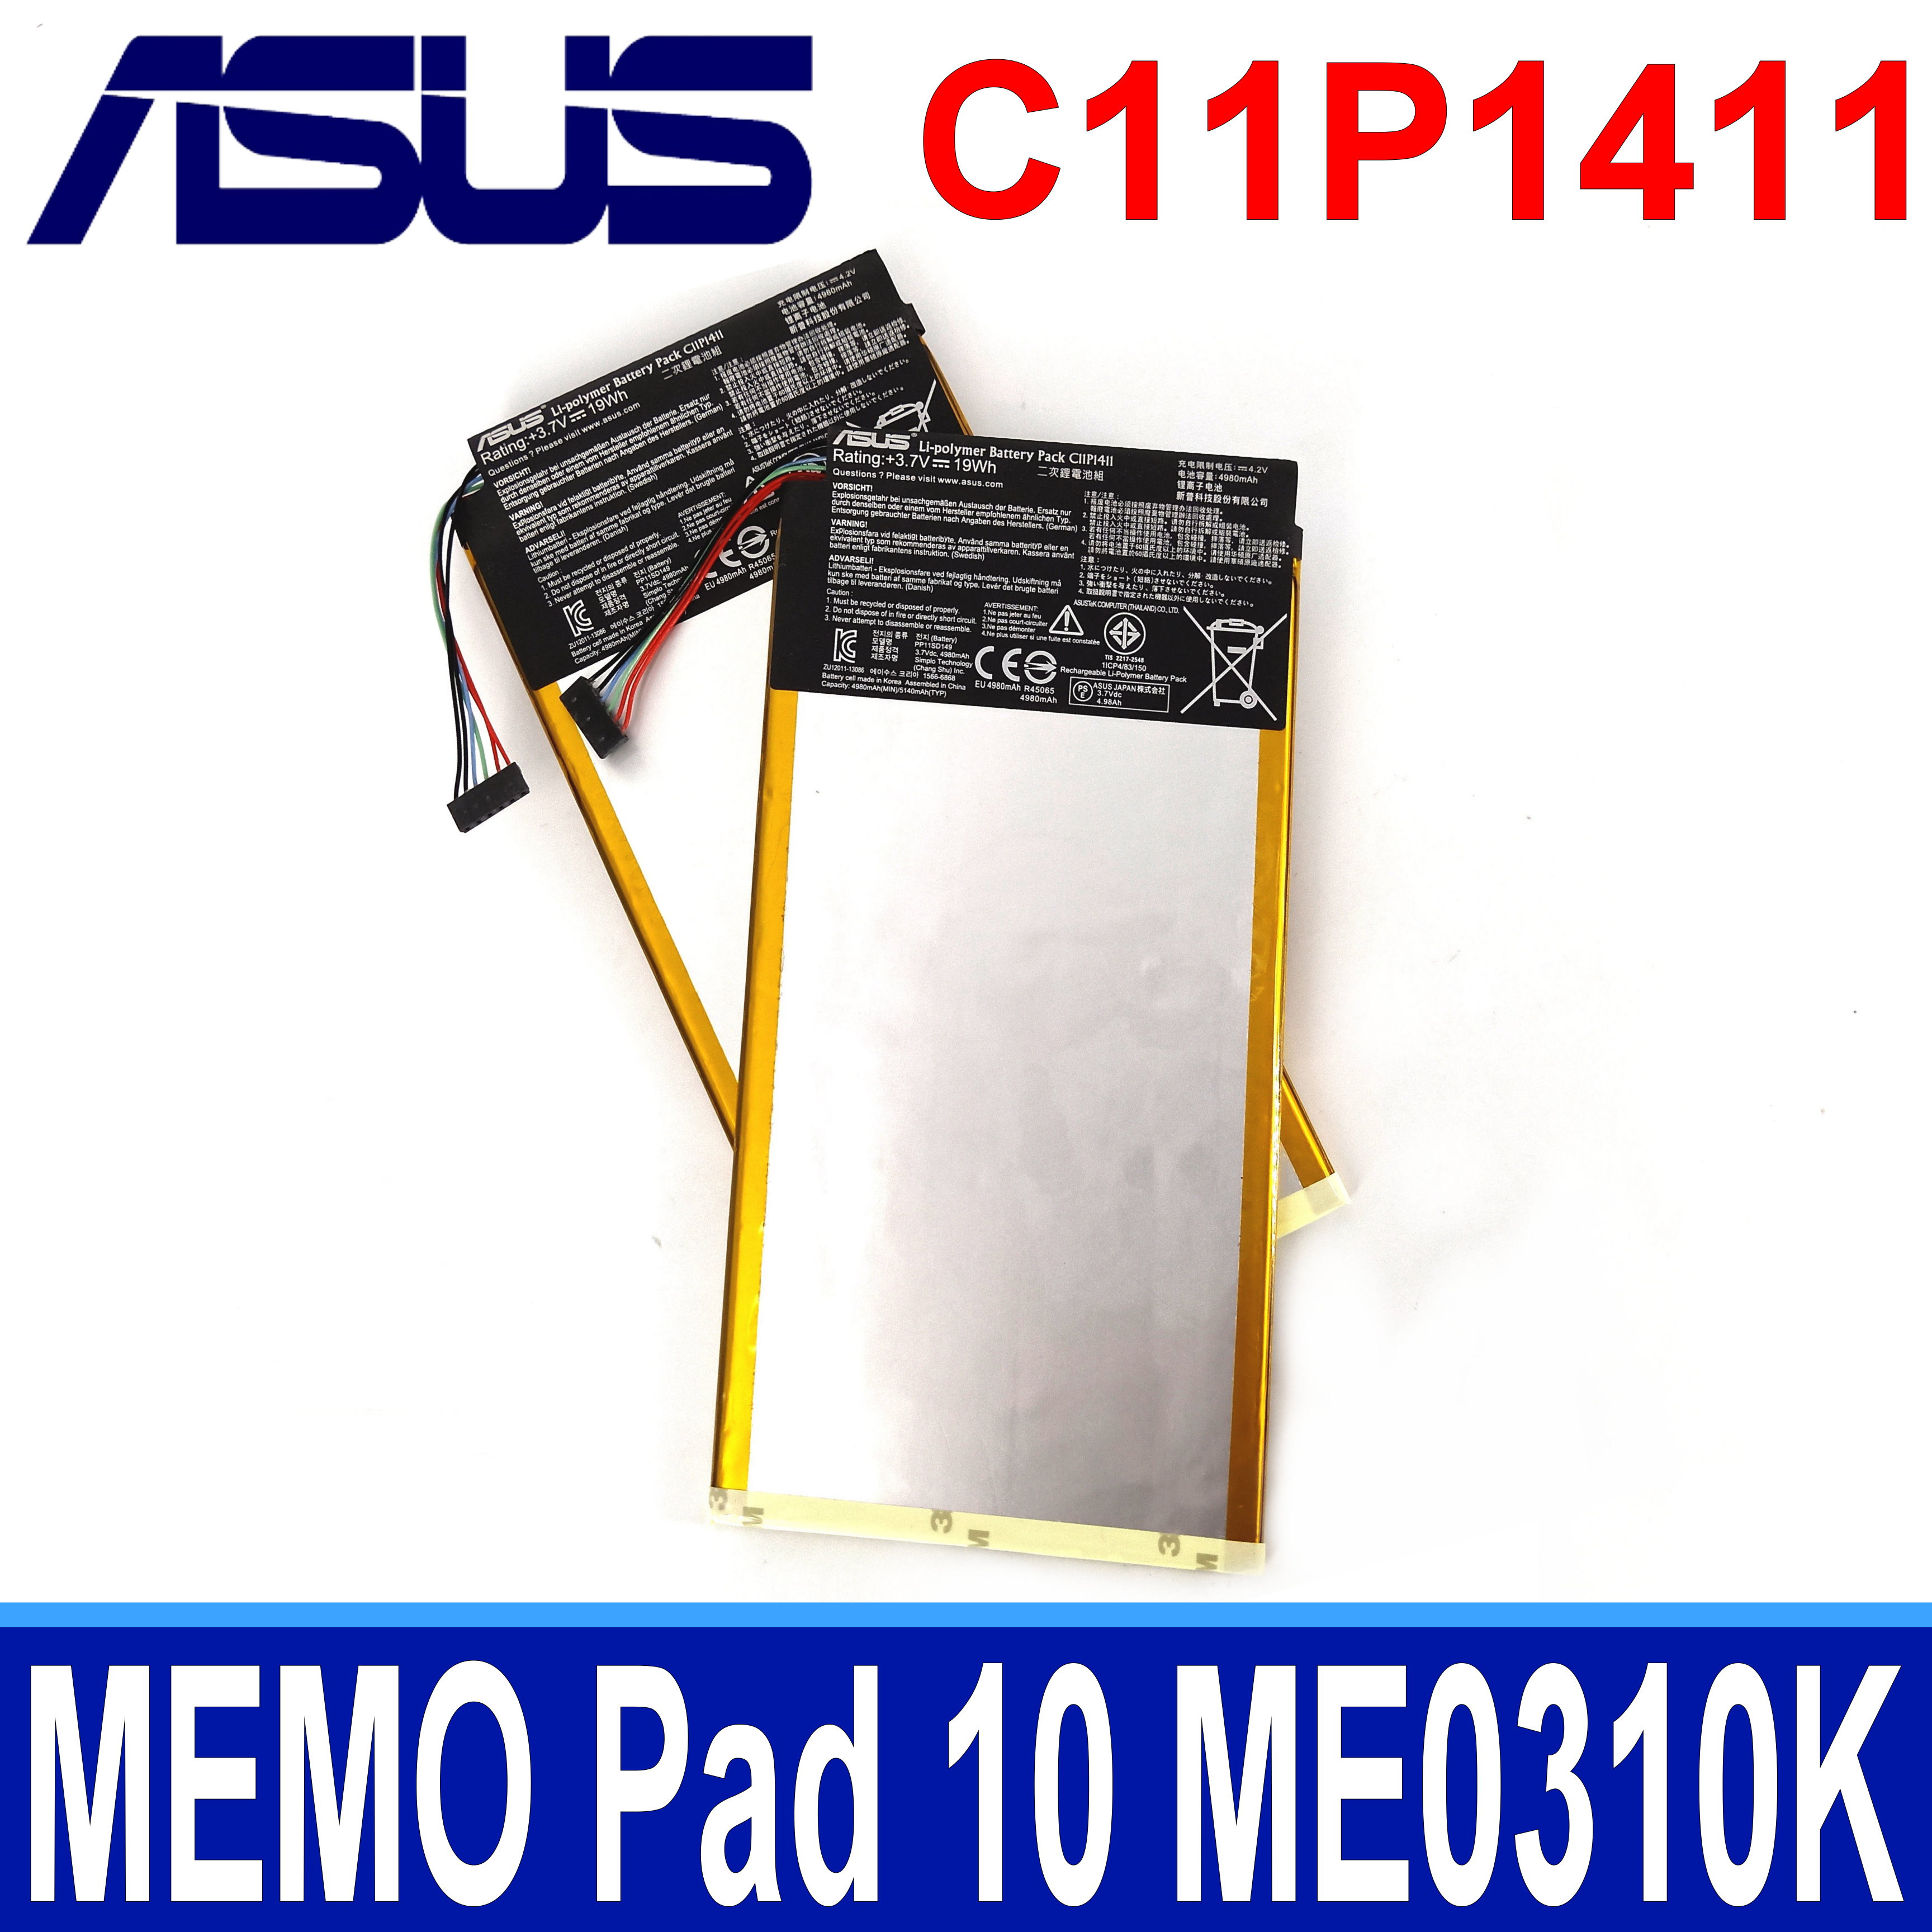 ASUS C11P1411 2芯 原廠電池 MEMO Pad 10 ME0310K ME0310K 1B 6A K01E ME103K ME103K 1A 1B 6A